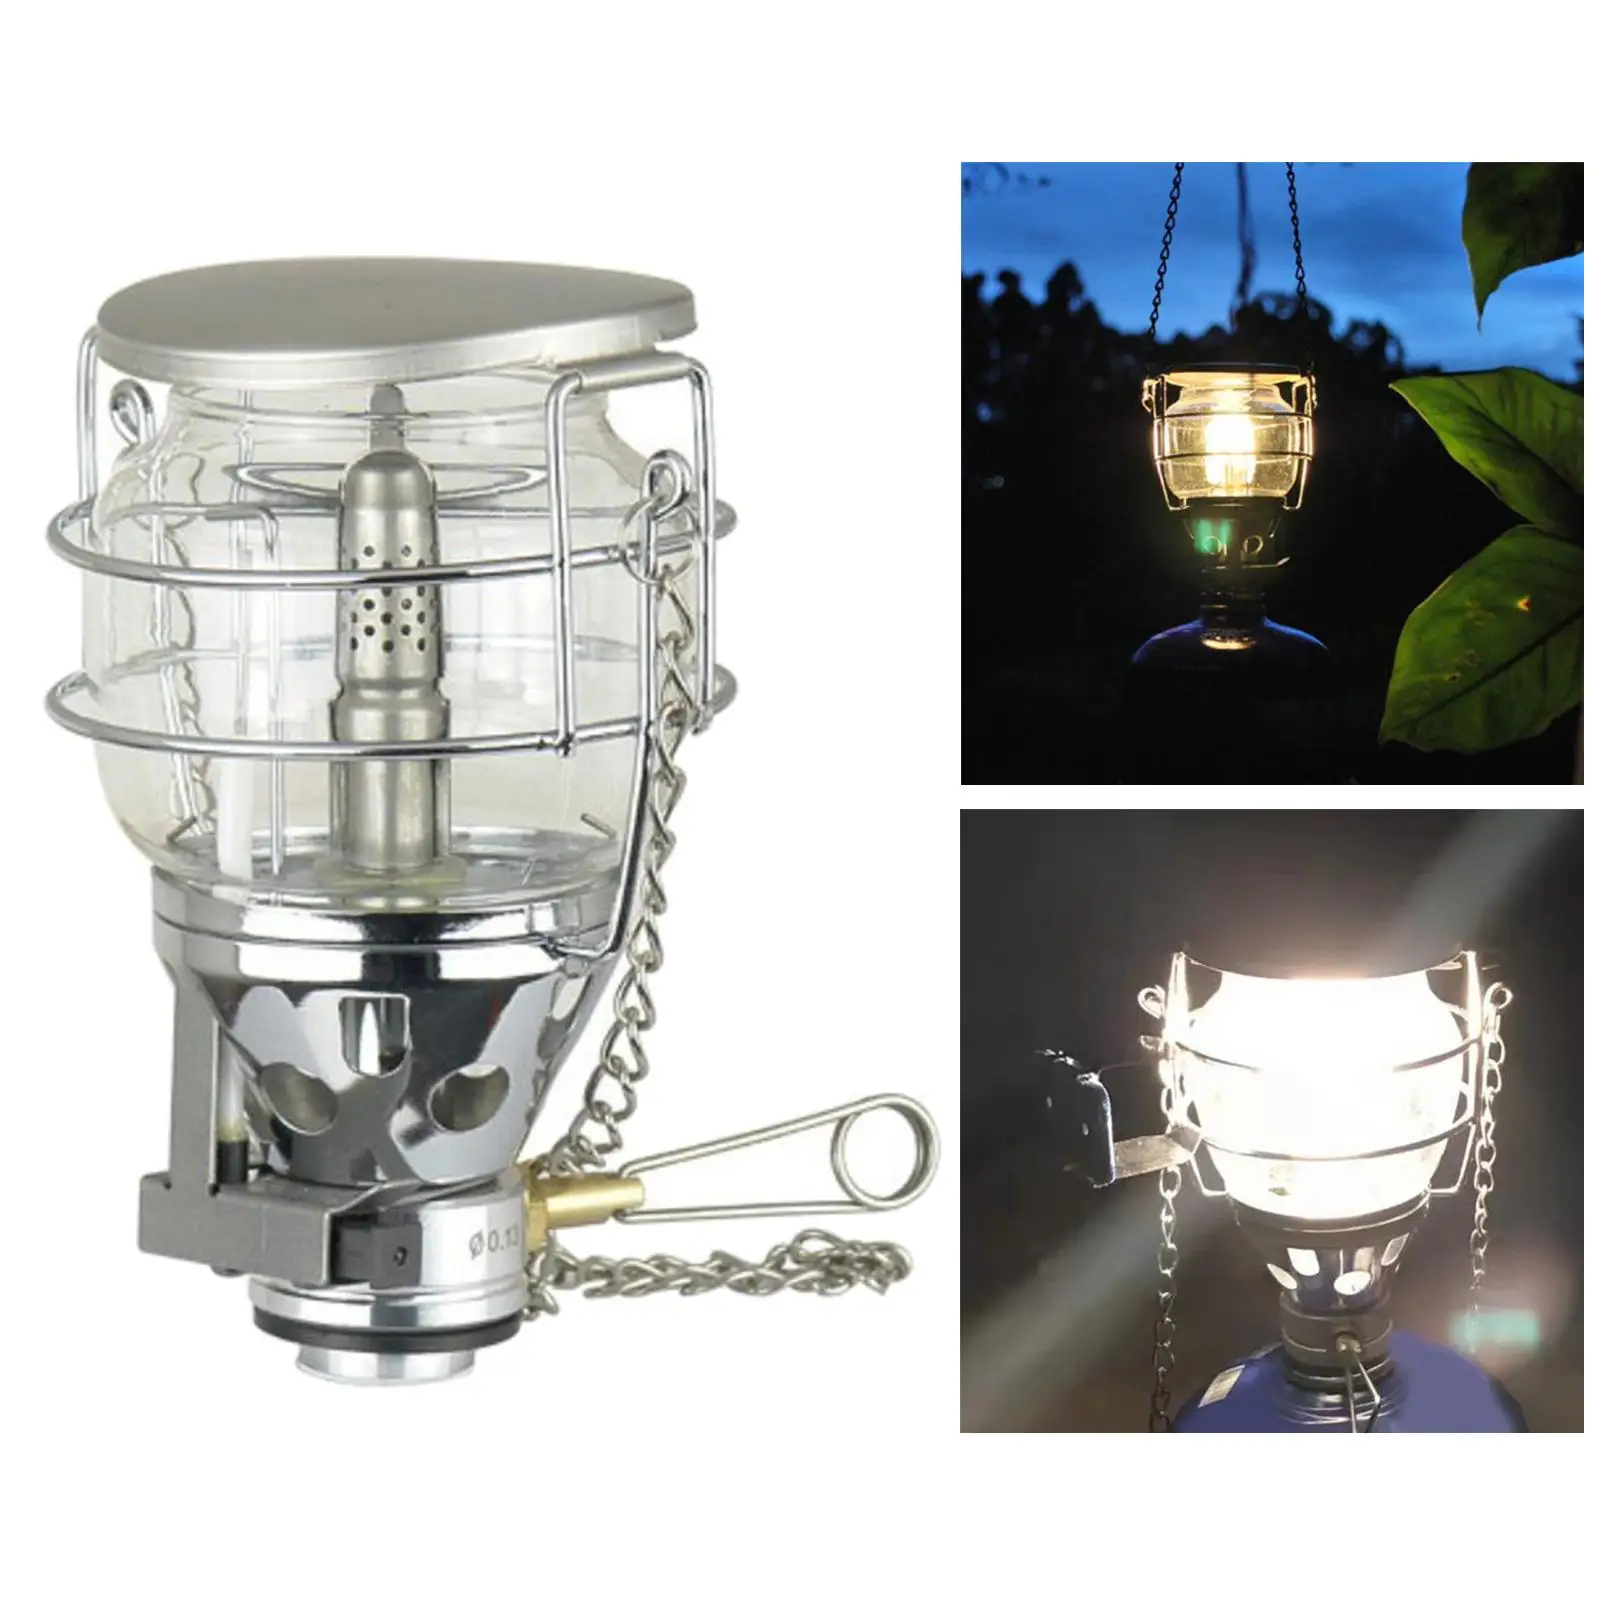  Propane Fuel Propane Deluxe Kerosene Lantern Mantles Gas Lantern